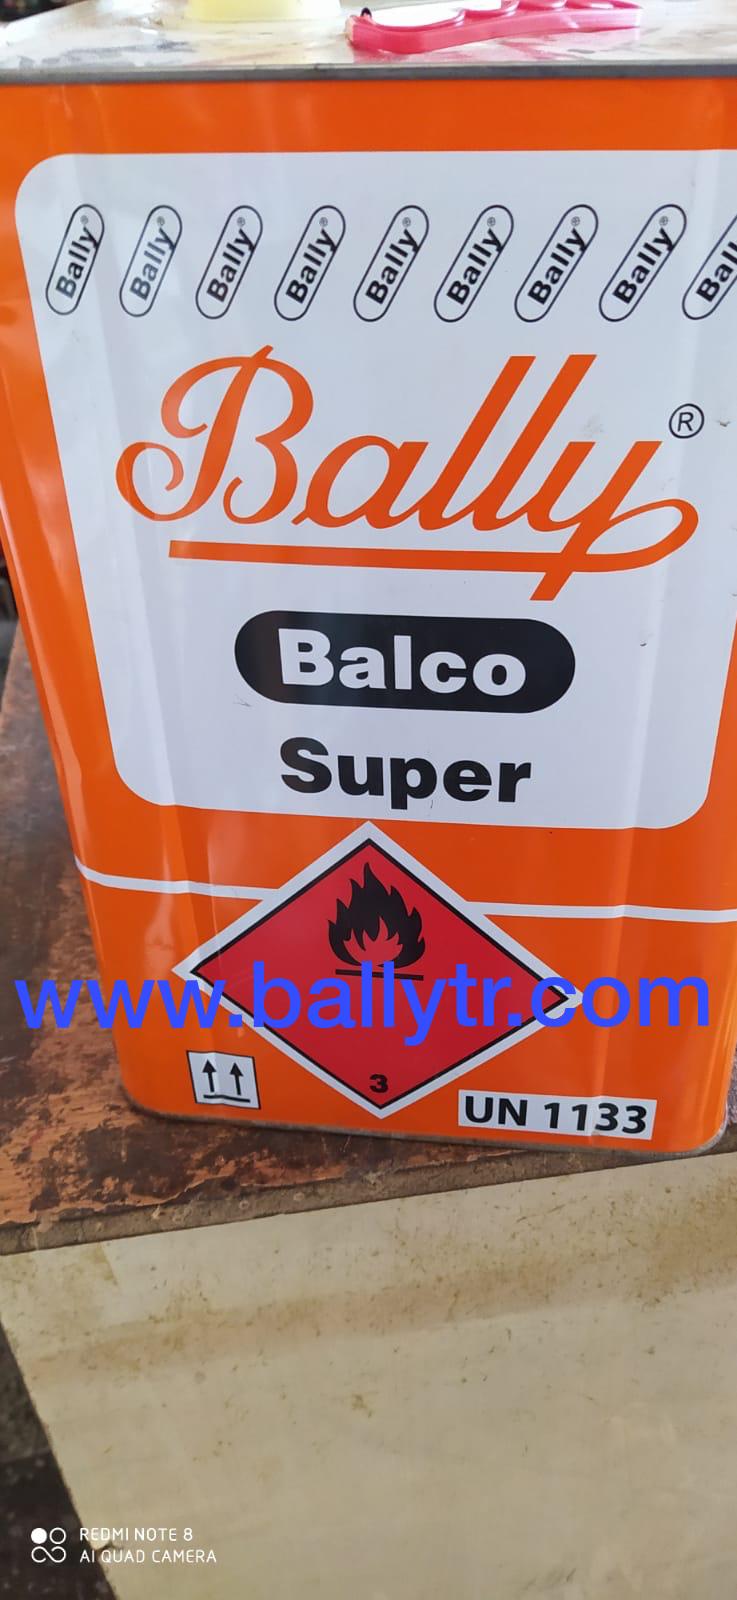 С 1932 года клеи Bally Balco, лицензированные в Швейцарии, имеют высшее качество.